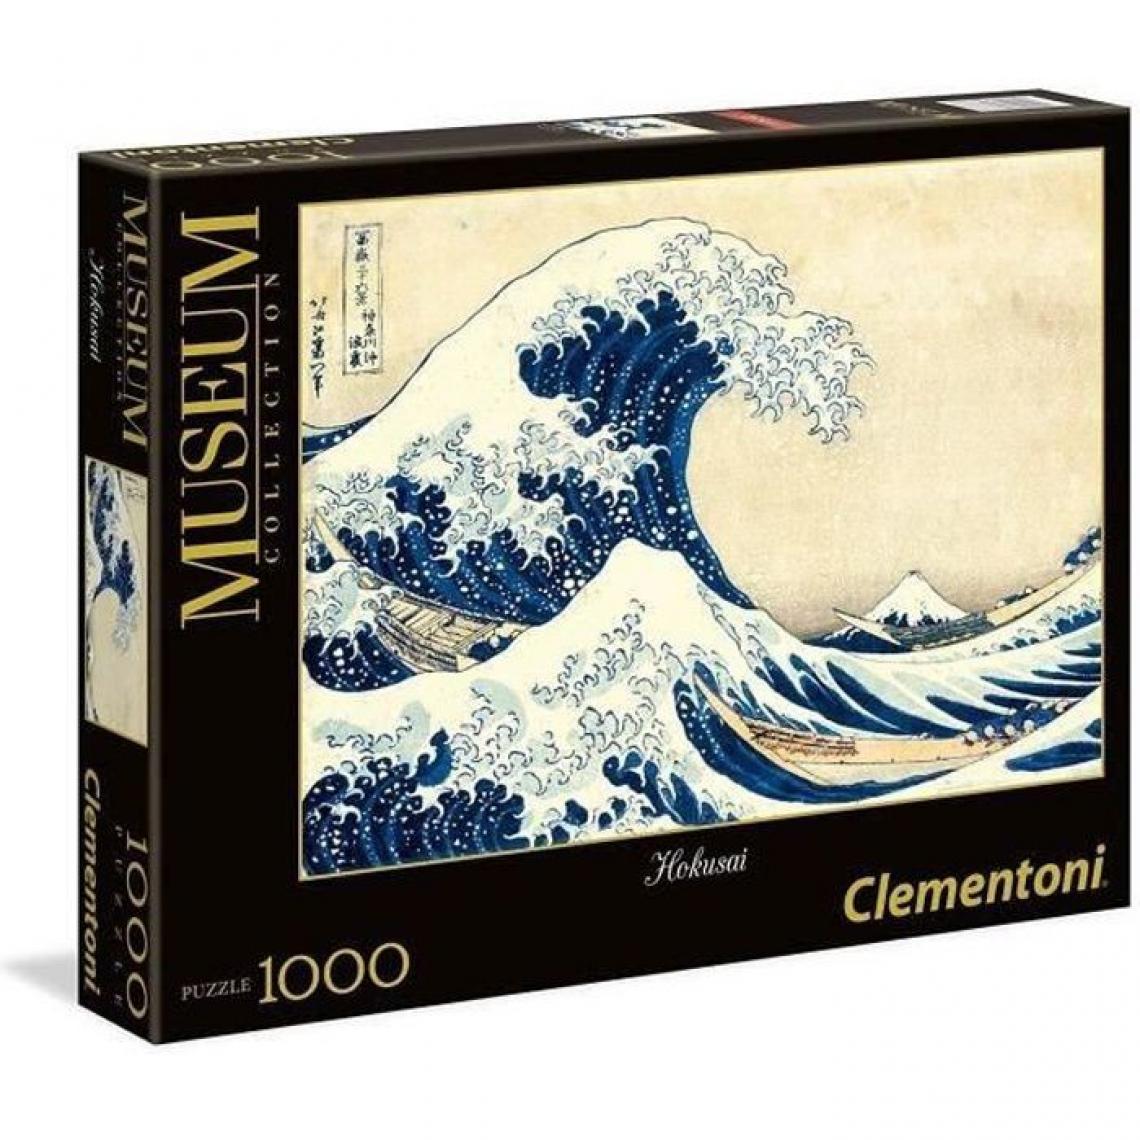 Clementoni - PUZZLE Collection Museum 1000 pieces - Hokusai La Grande Vague - Animaux